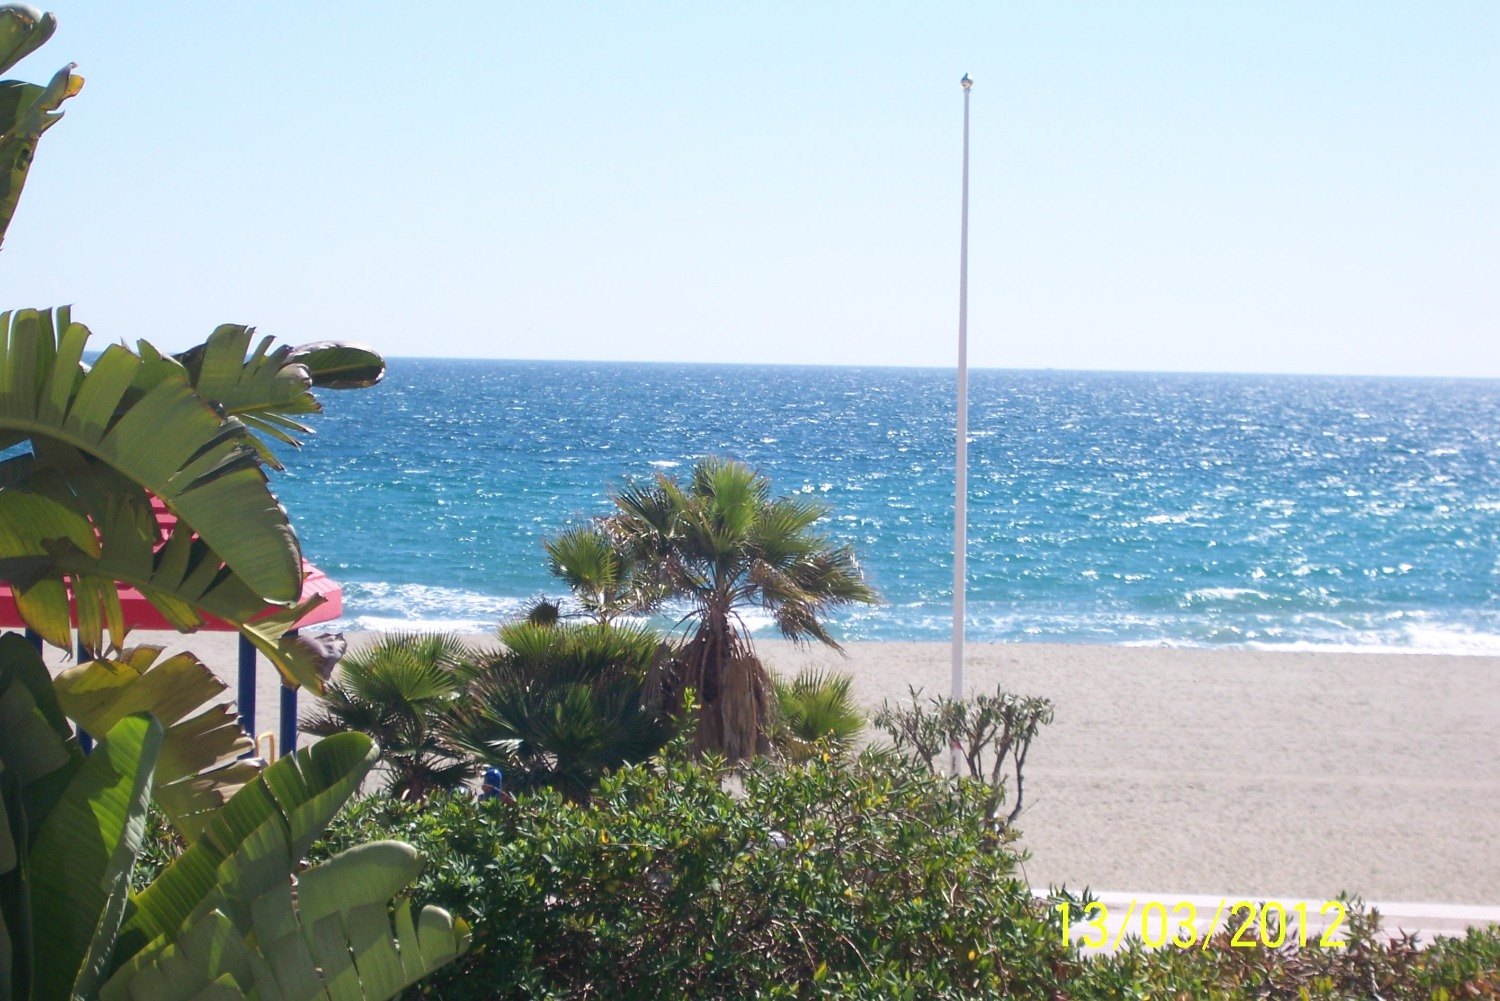 Lloguer vacacional. Apartament amb vistes al mar. Puerto Banús, Marbella.